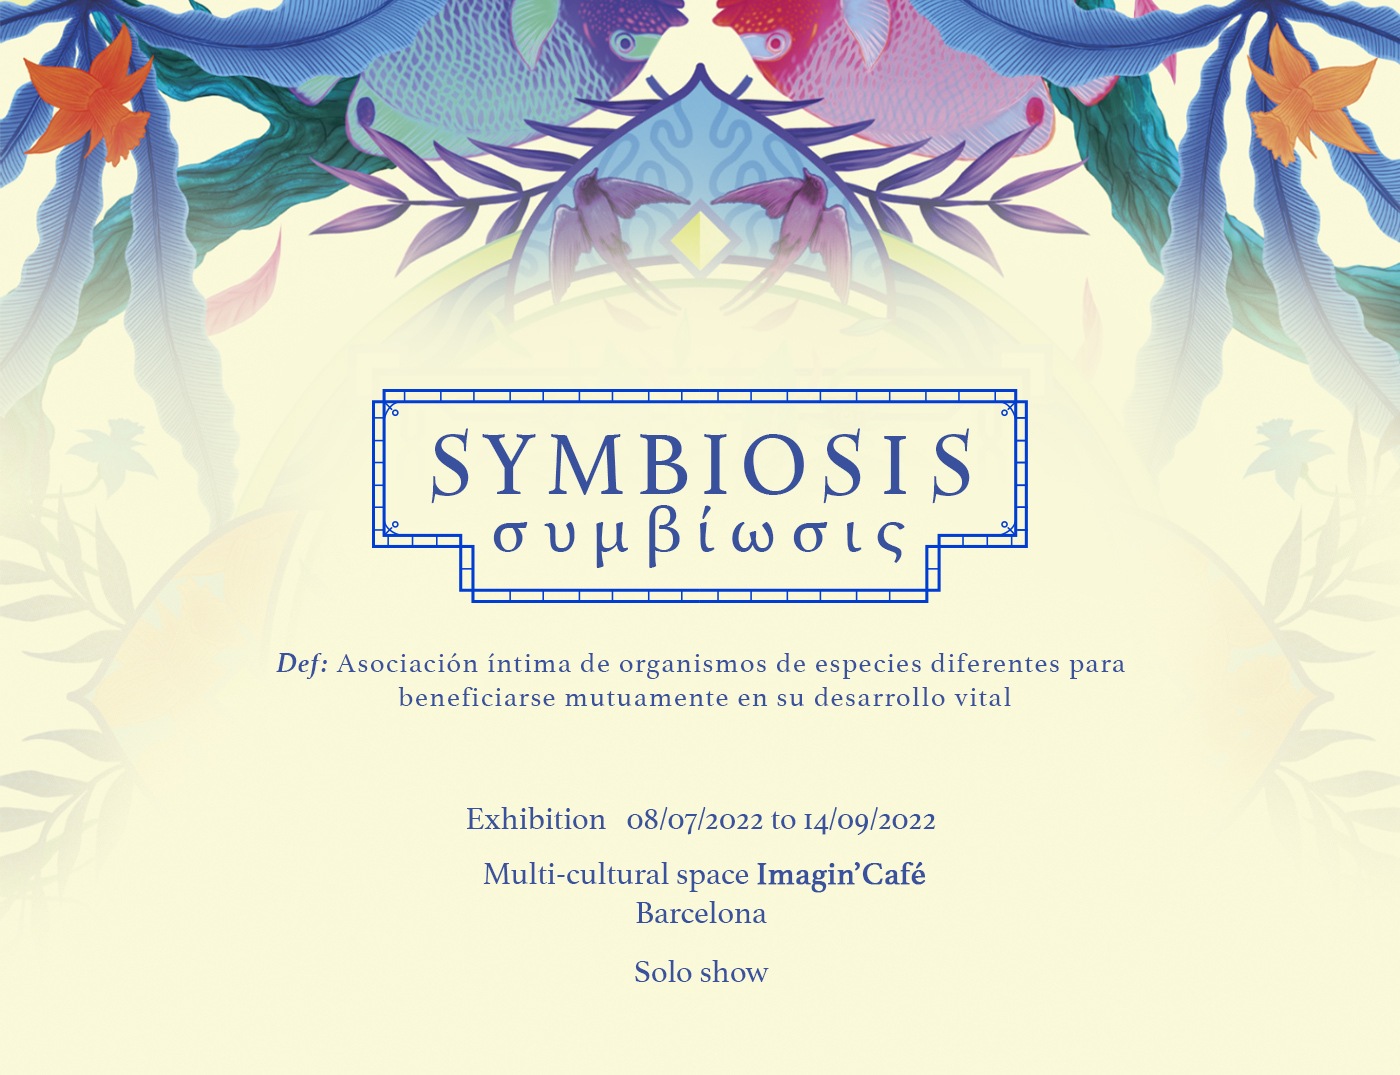 Solo show “Symbiosis” at “Imagin’Café” Barcelona